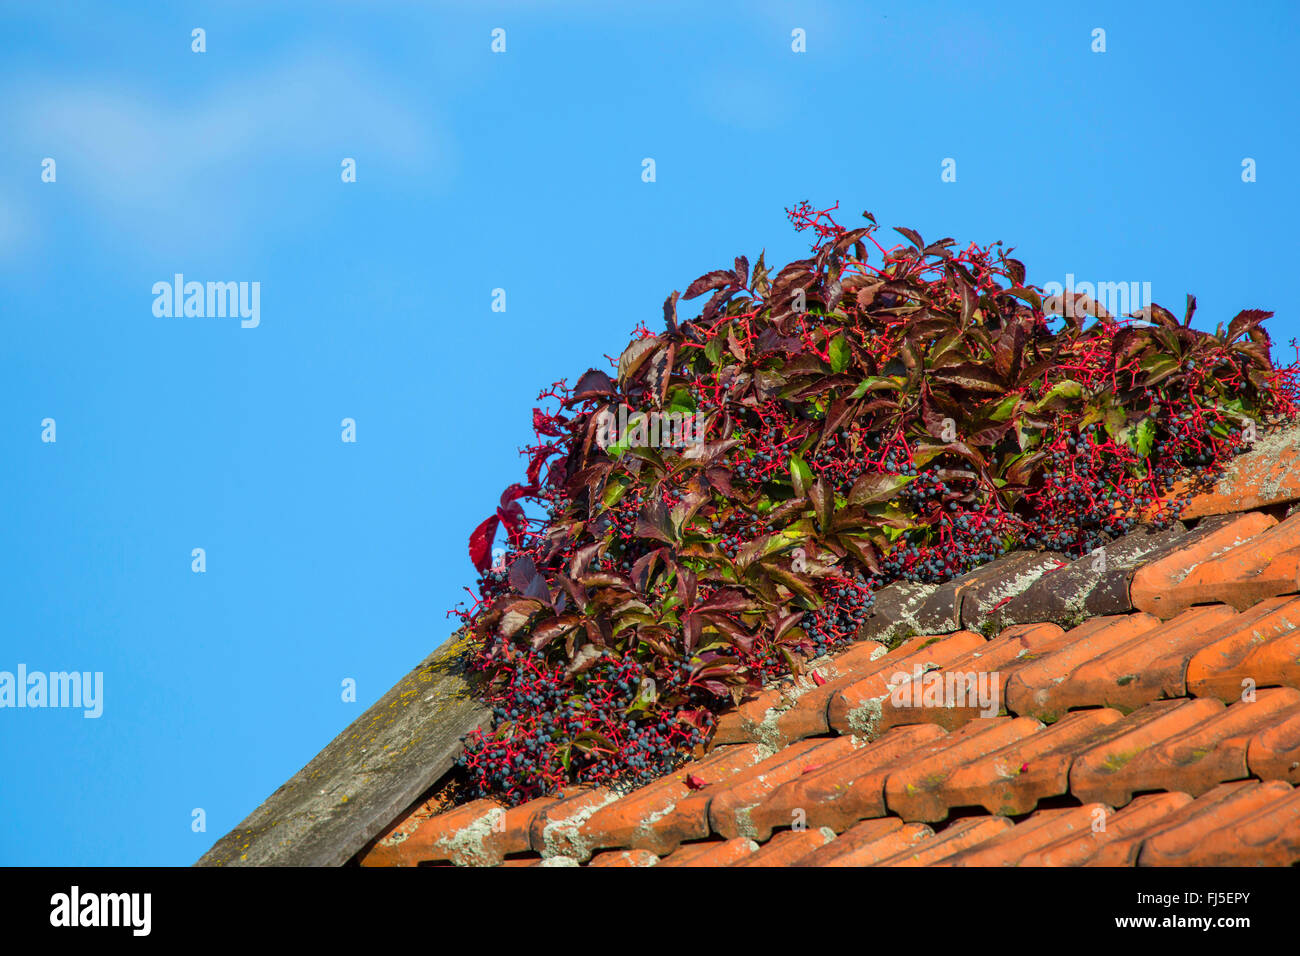 false Virginia-creeper (Parthenocissus inserta, Parthenocissus quinquefolia agg.), on a roof, Germany Stock Photo